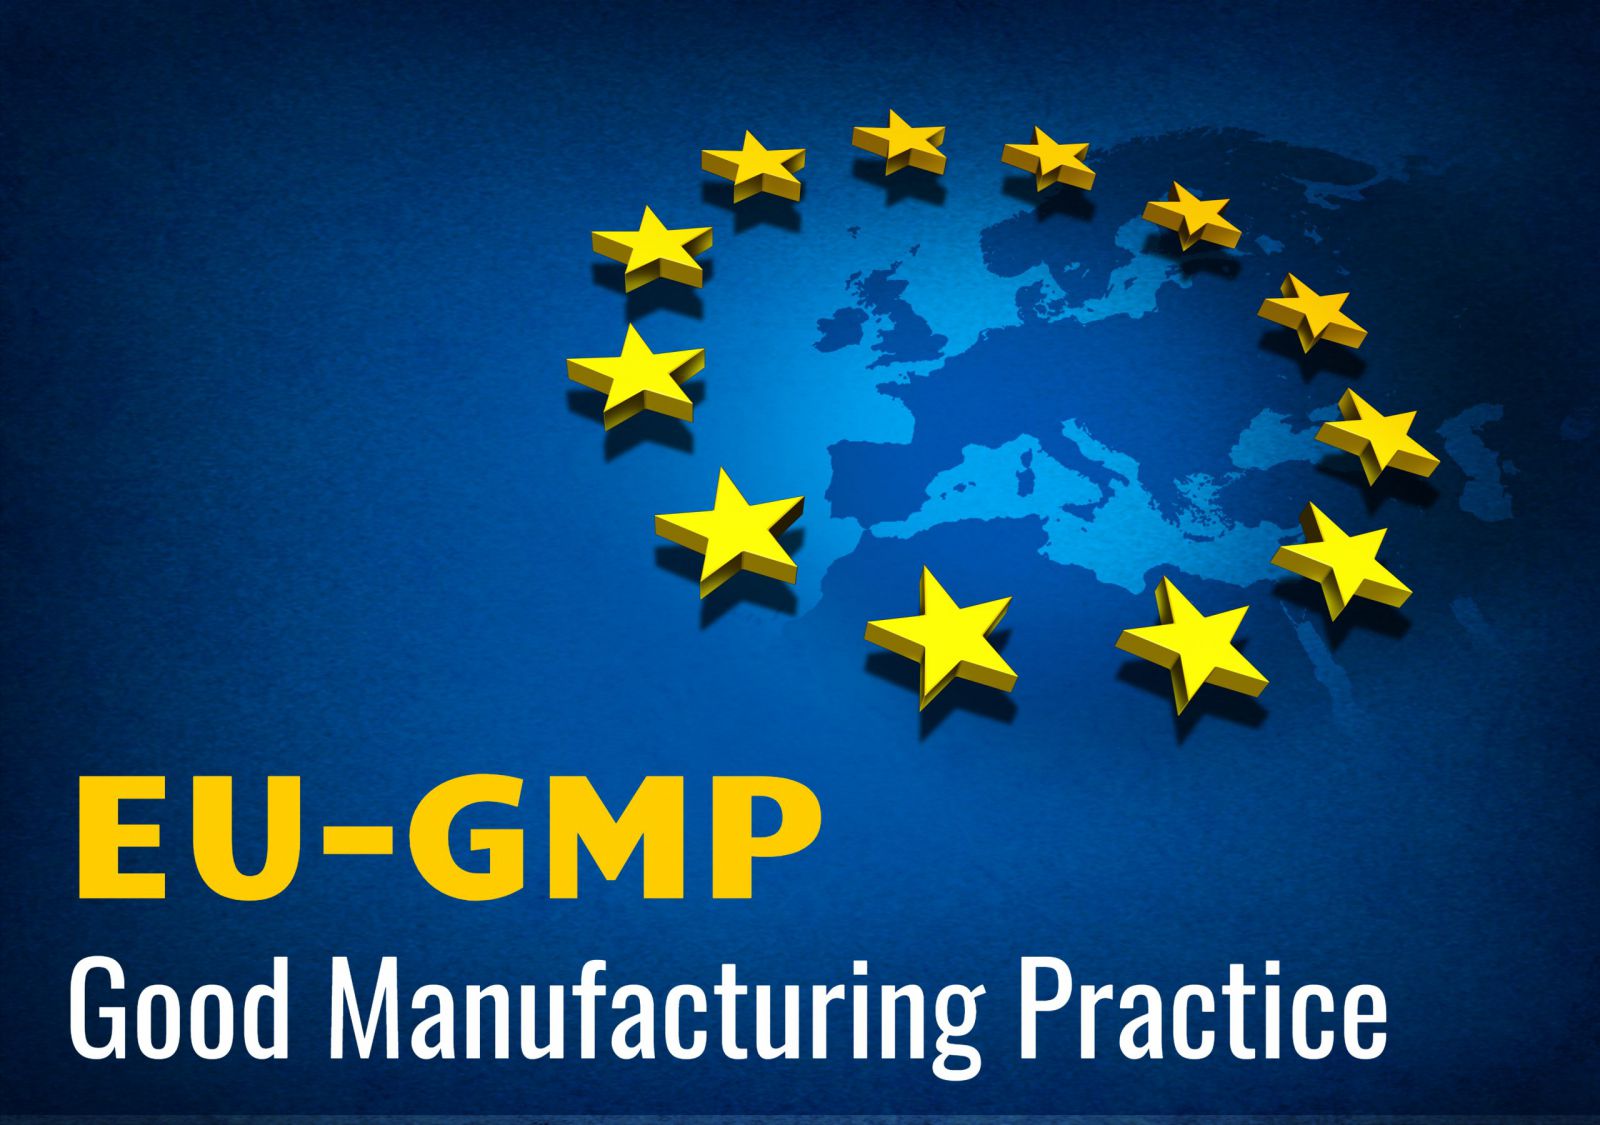 Cơ hội nào cho doanh nghiệp khi xây dựng nhà máy dược tiêu chuẩn EU GMP